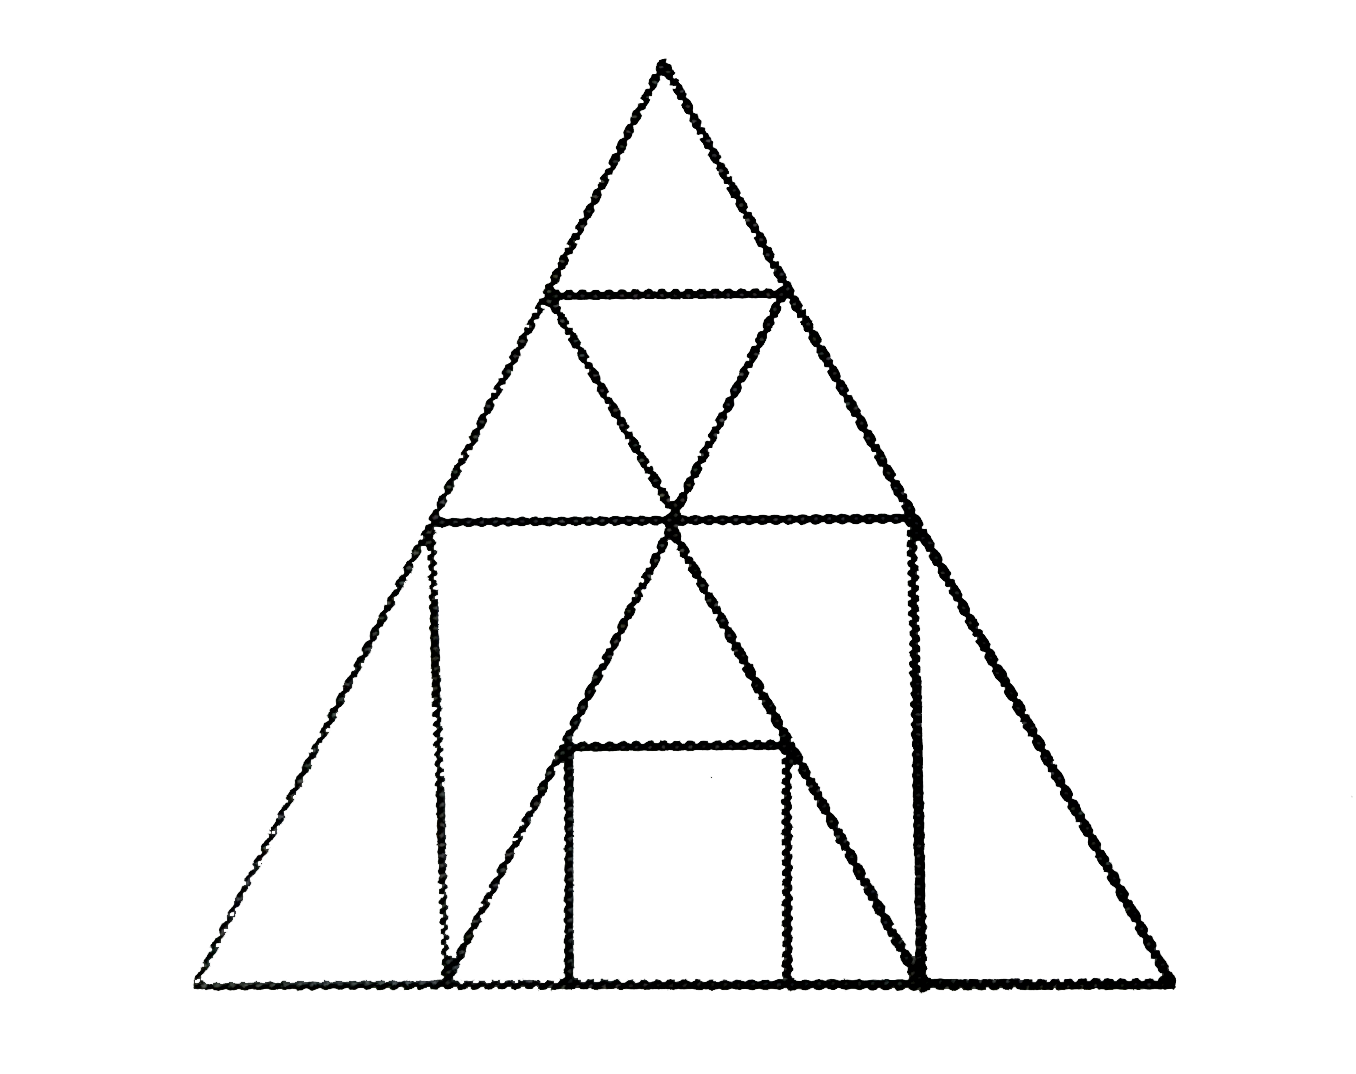 दी गई आकृति में त्रिभुजों की संख्या ज्ञात कीजिए ।